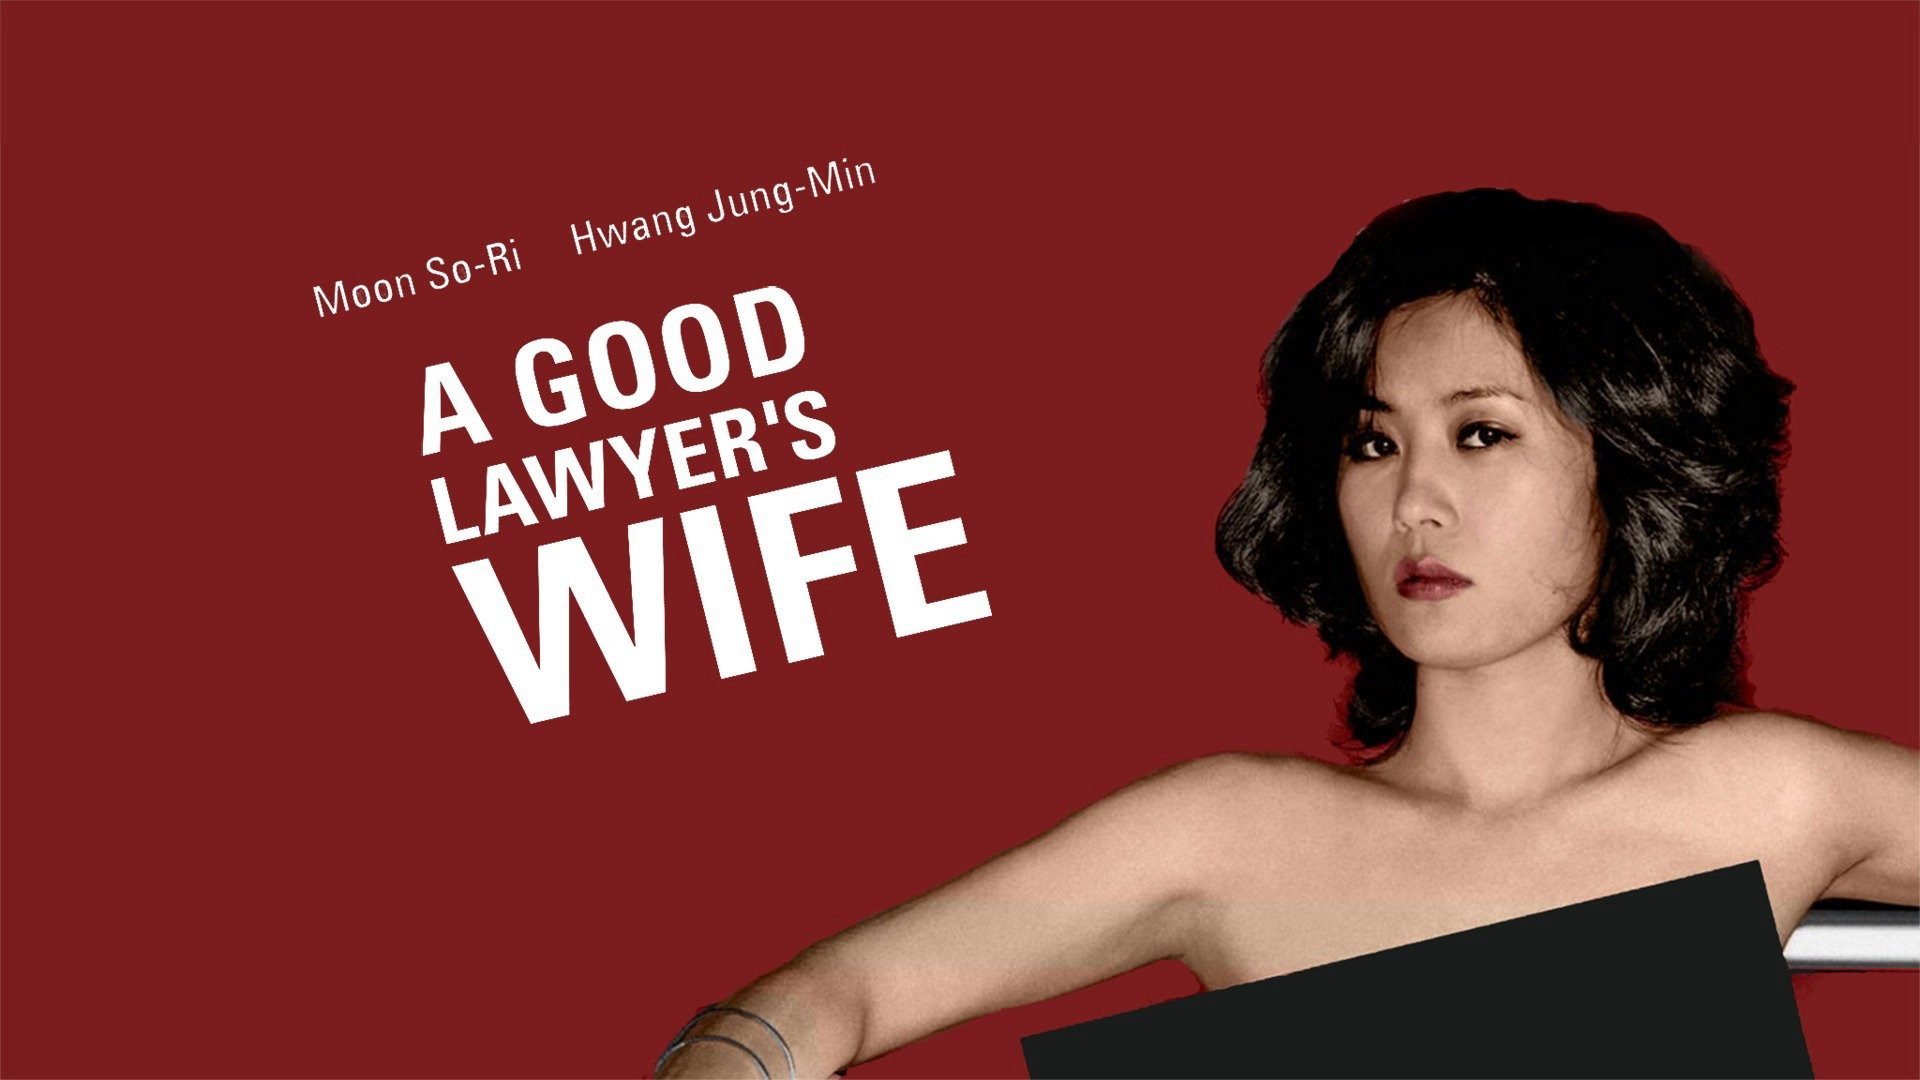  Những đam mê của cô vợ luật sư A Good Lawyer's Wife